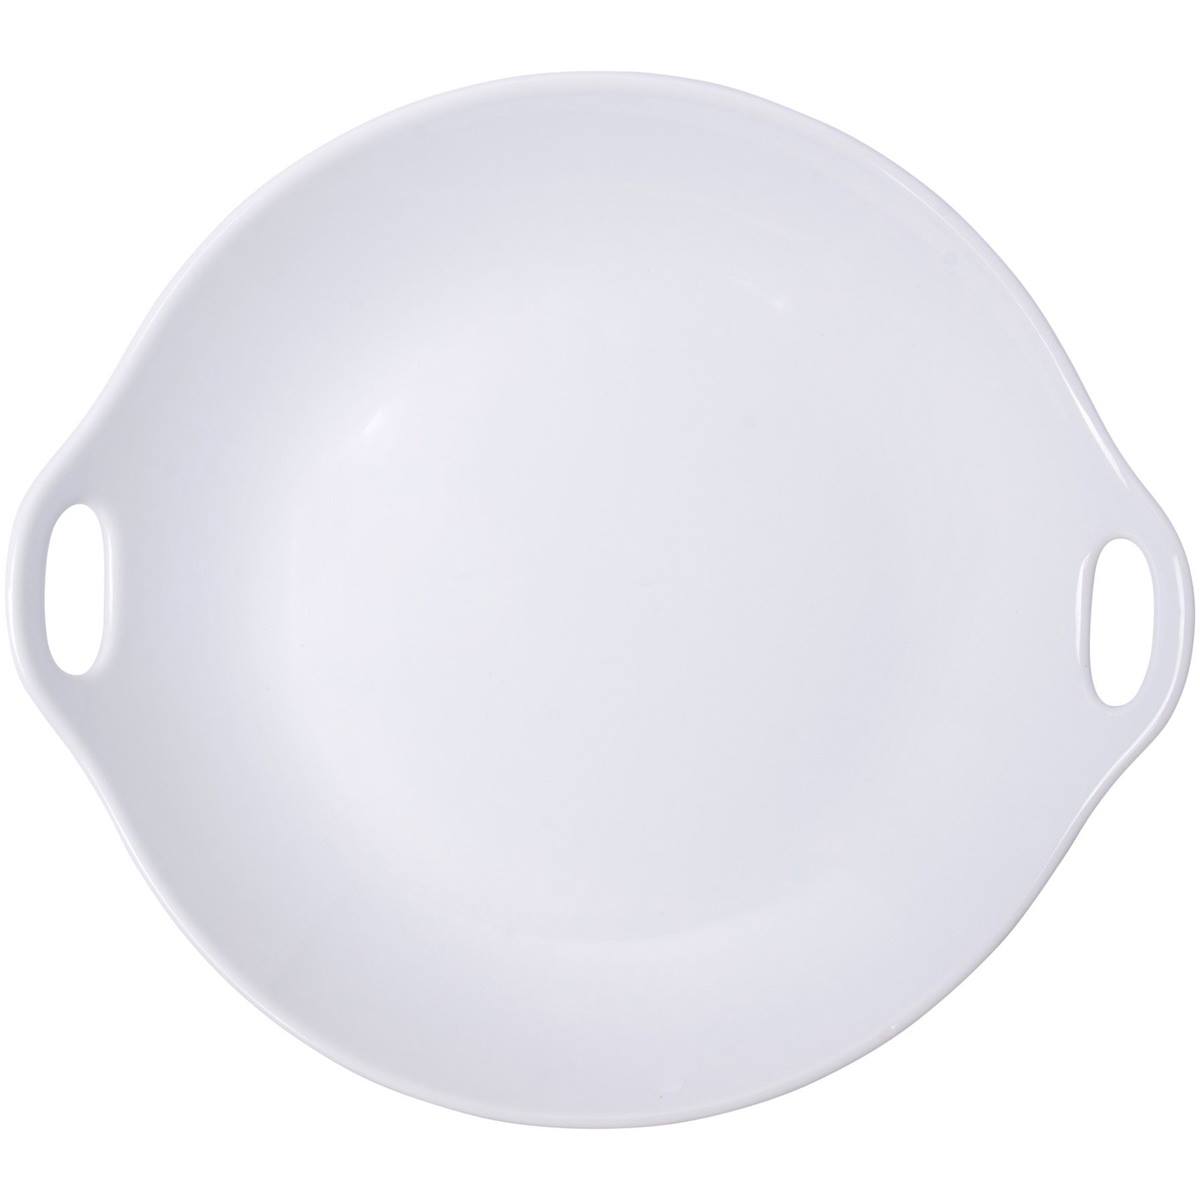 Home Essentials 11in. White Round Open Handle Platter